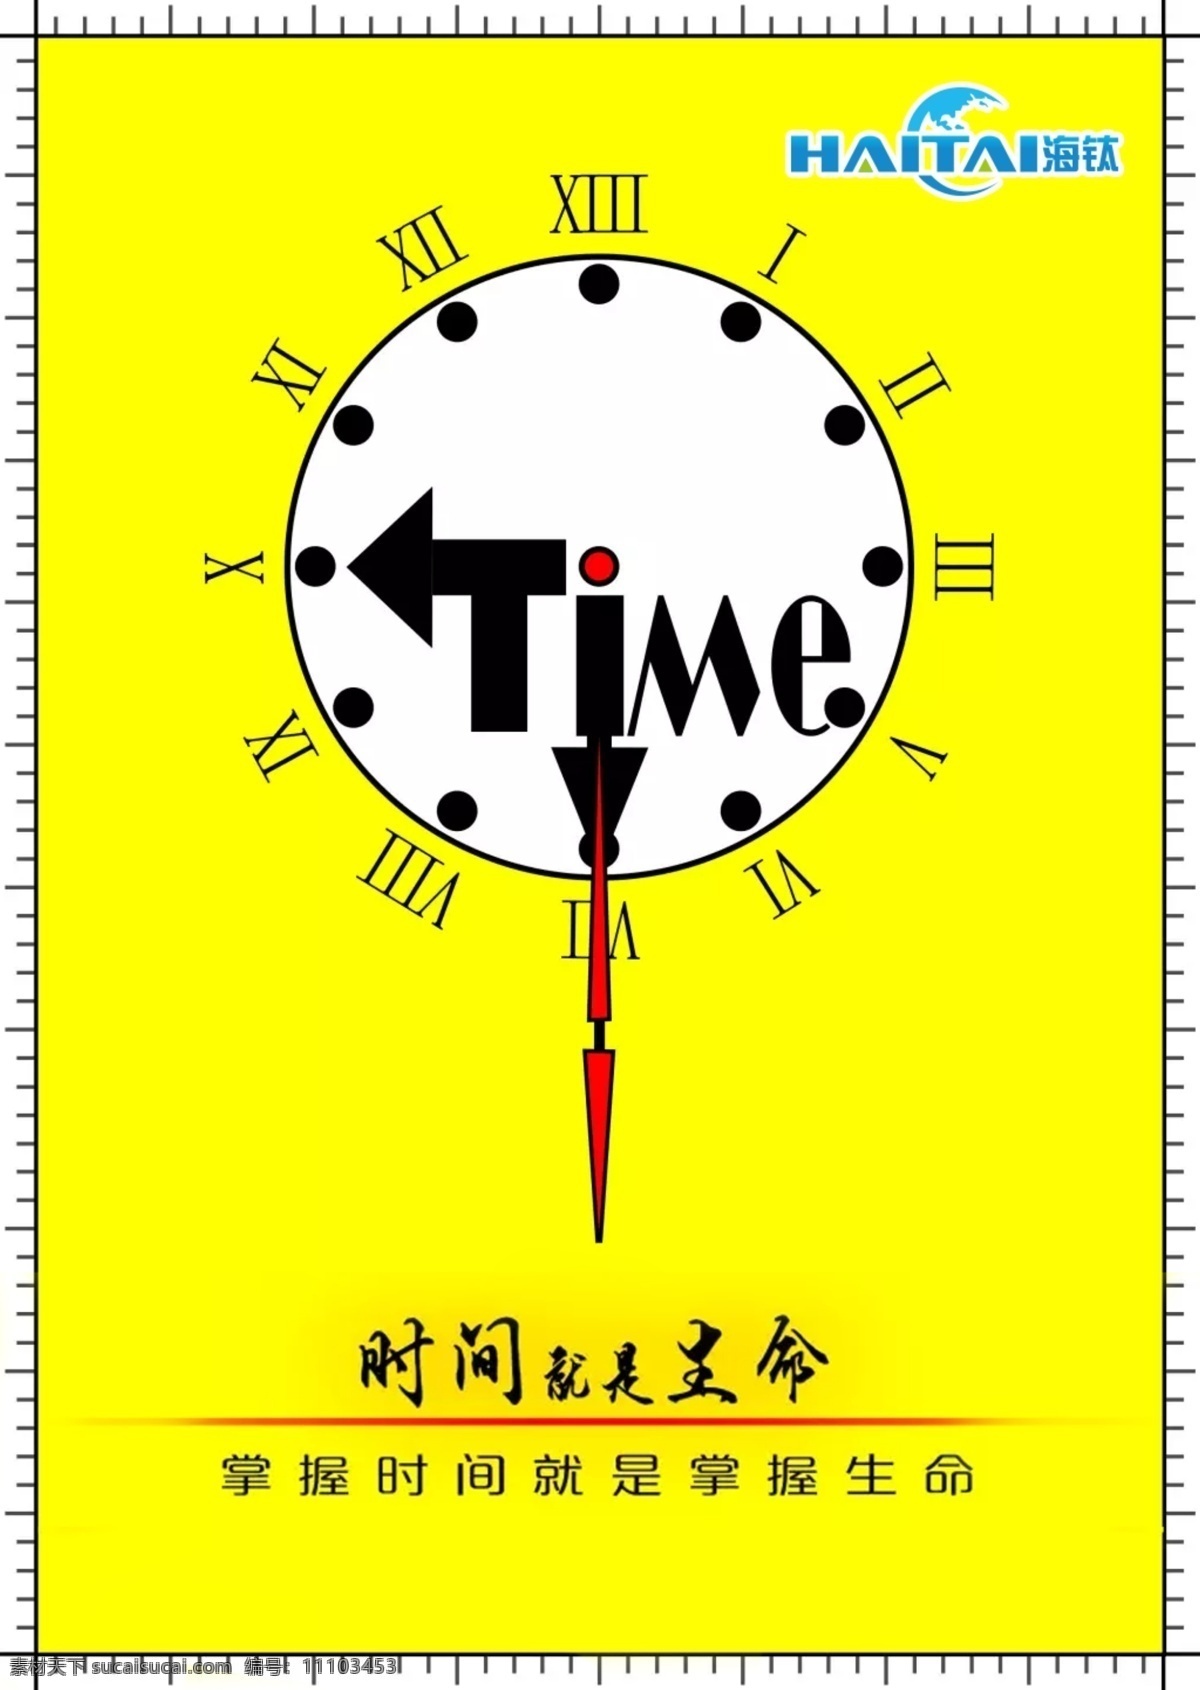 时间就是生命 时间 生命 时钟 手表 钟 企业文化 珍惜时间 加油 努力 time 掌握时间 机会 海钛